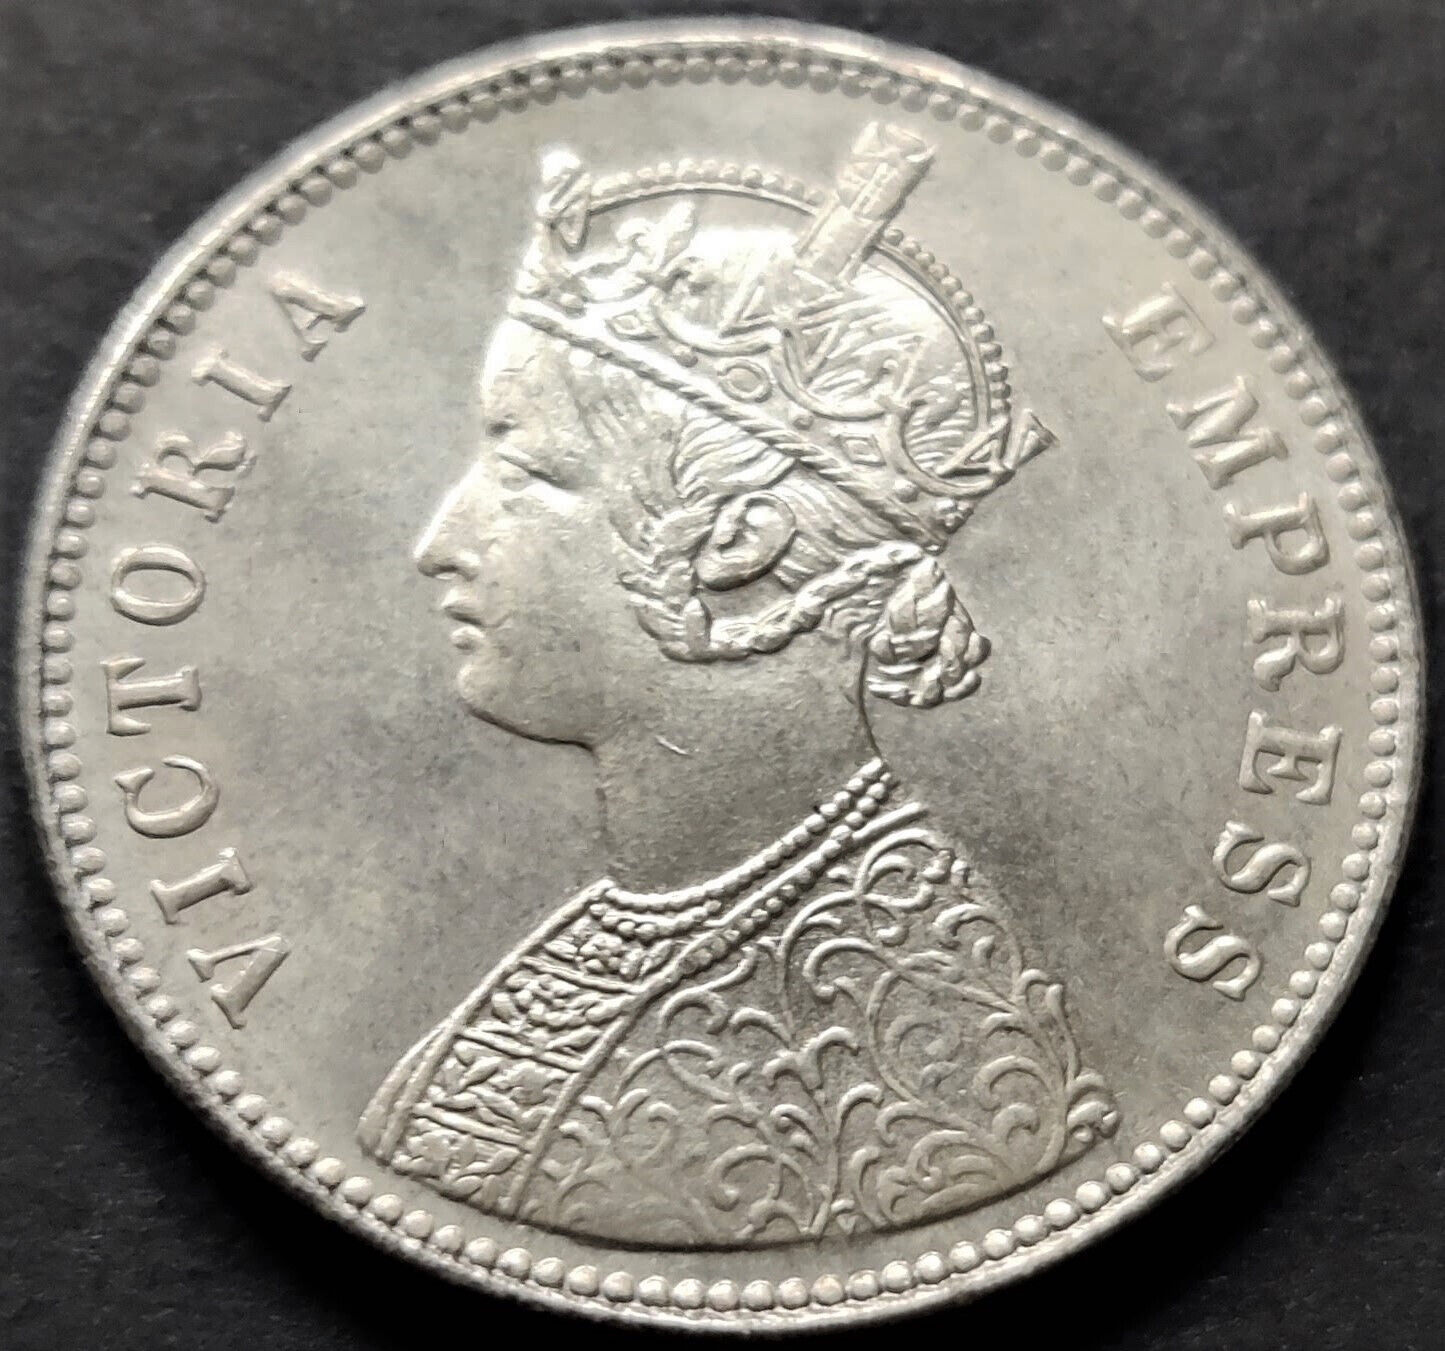 British India, Rupee 1, Victoria Empress, RARE 1897, a Replica Coin (R-41)